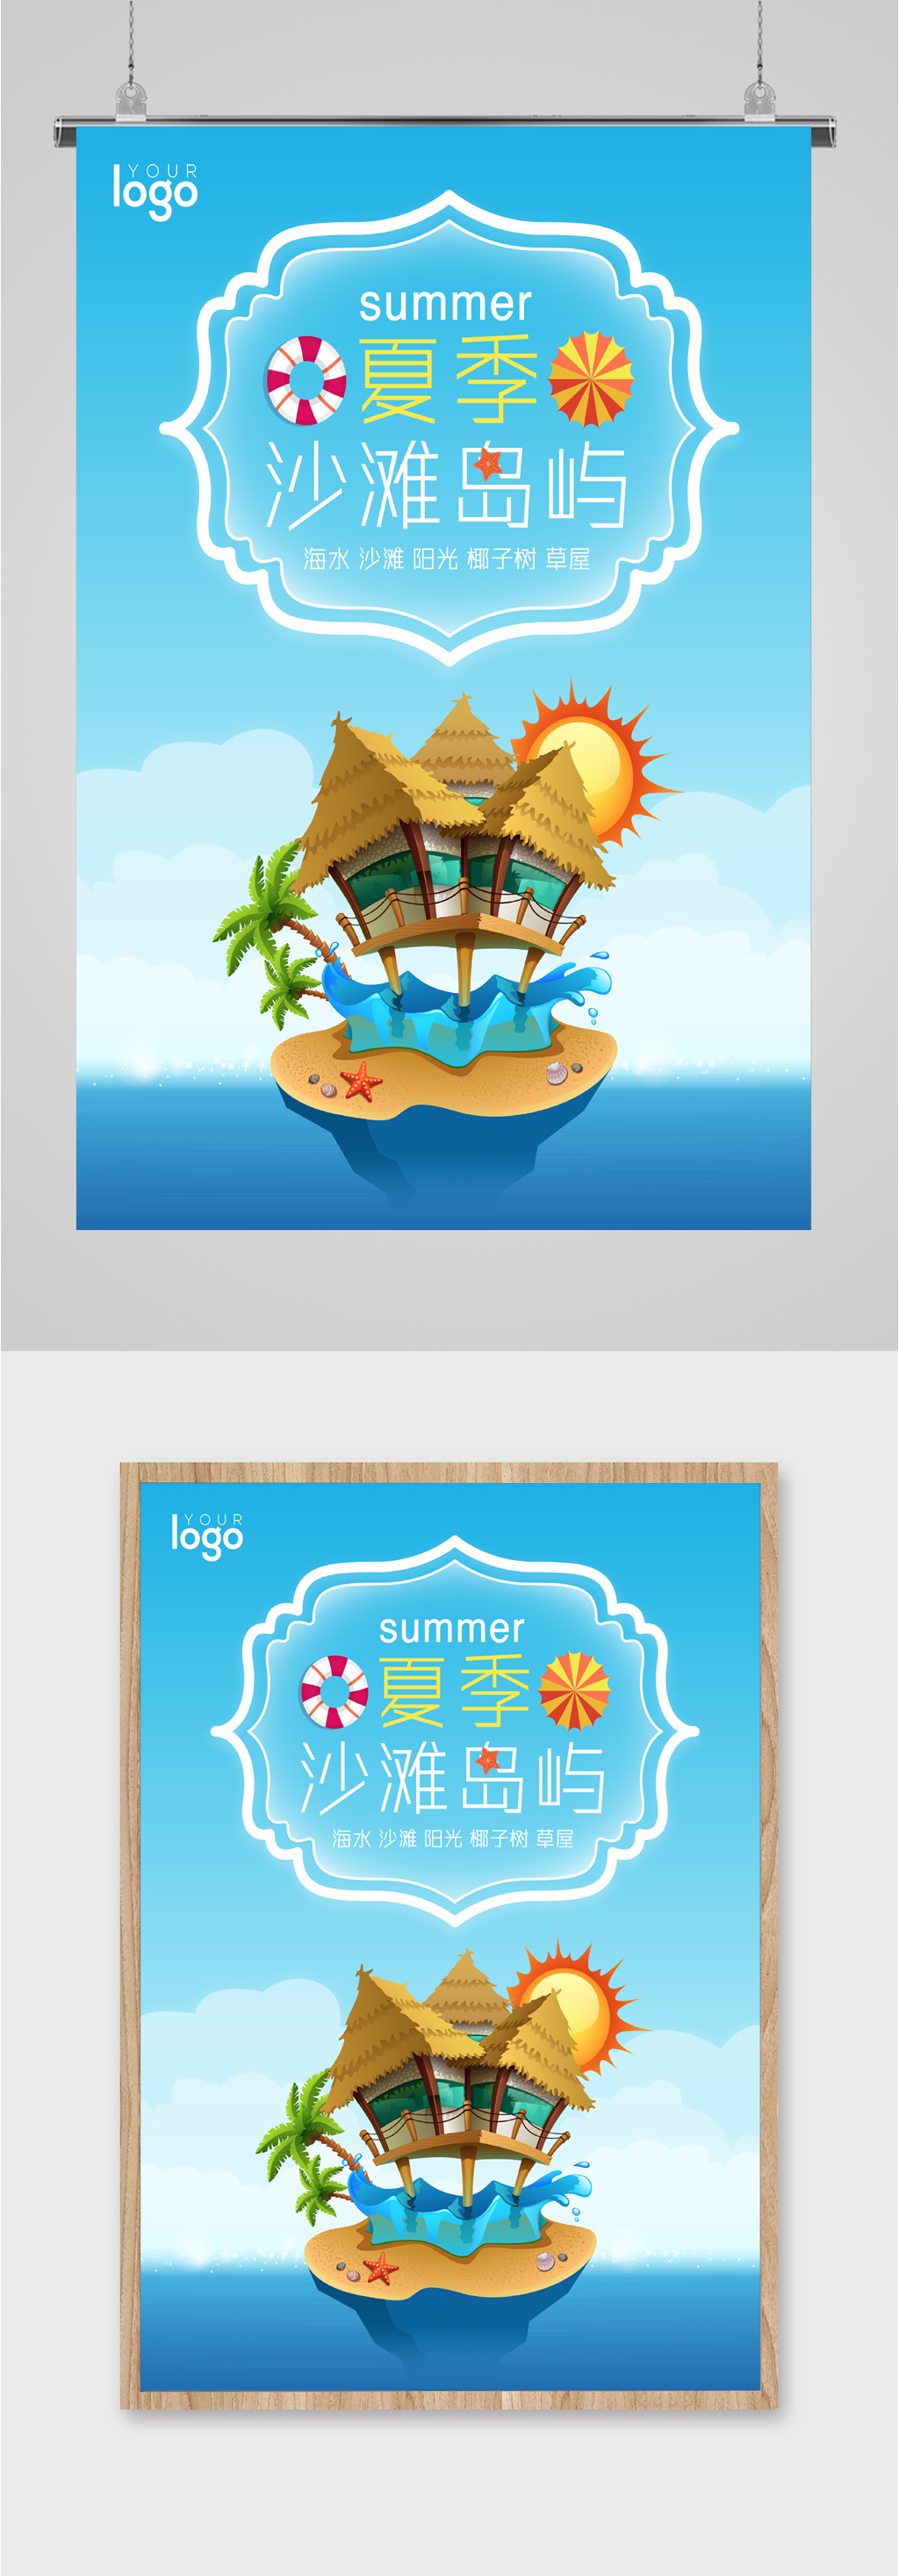 兴趣岛logo设计图片